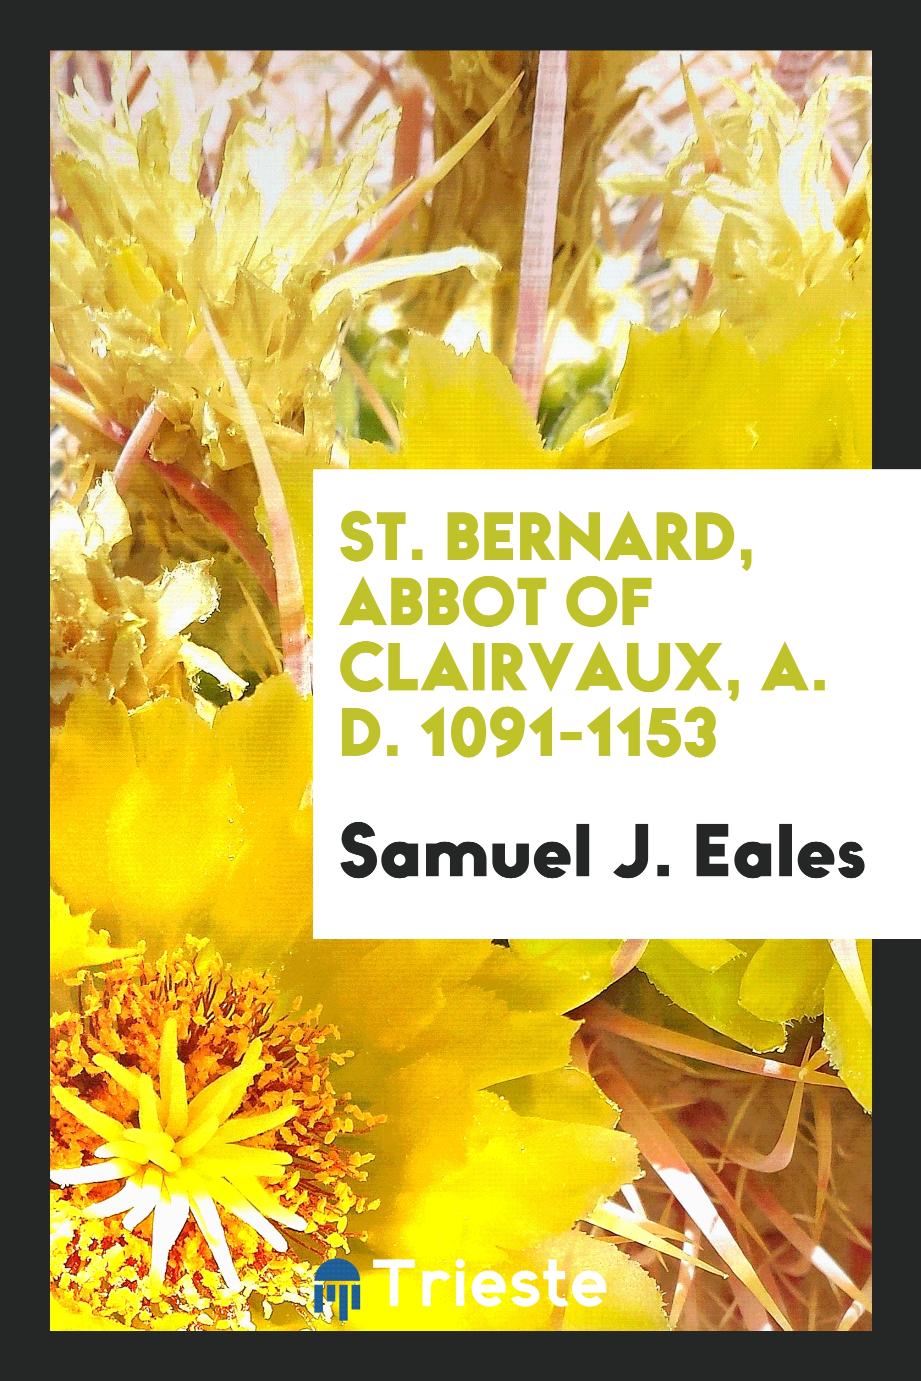 St. Bernard, abbot of Clairvaux, A. D. 1091-1153